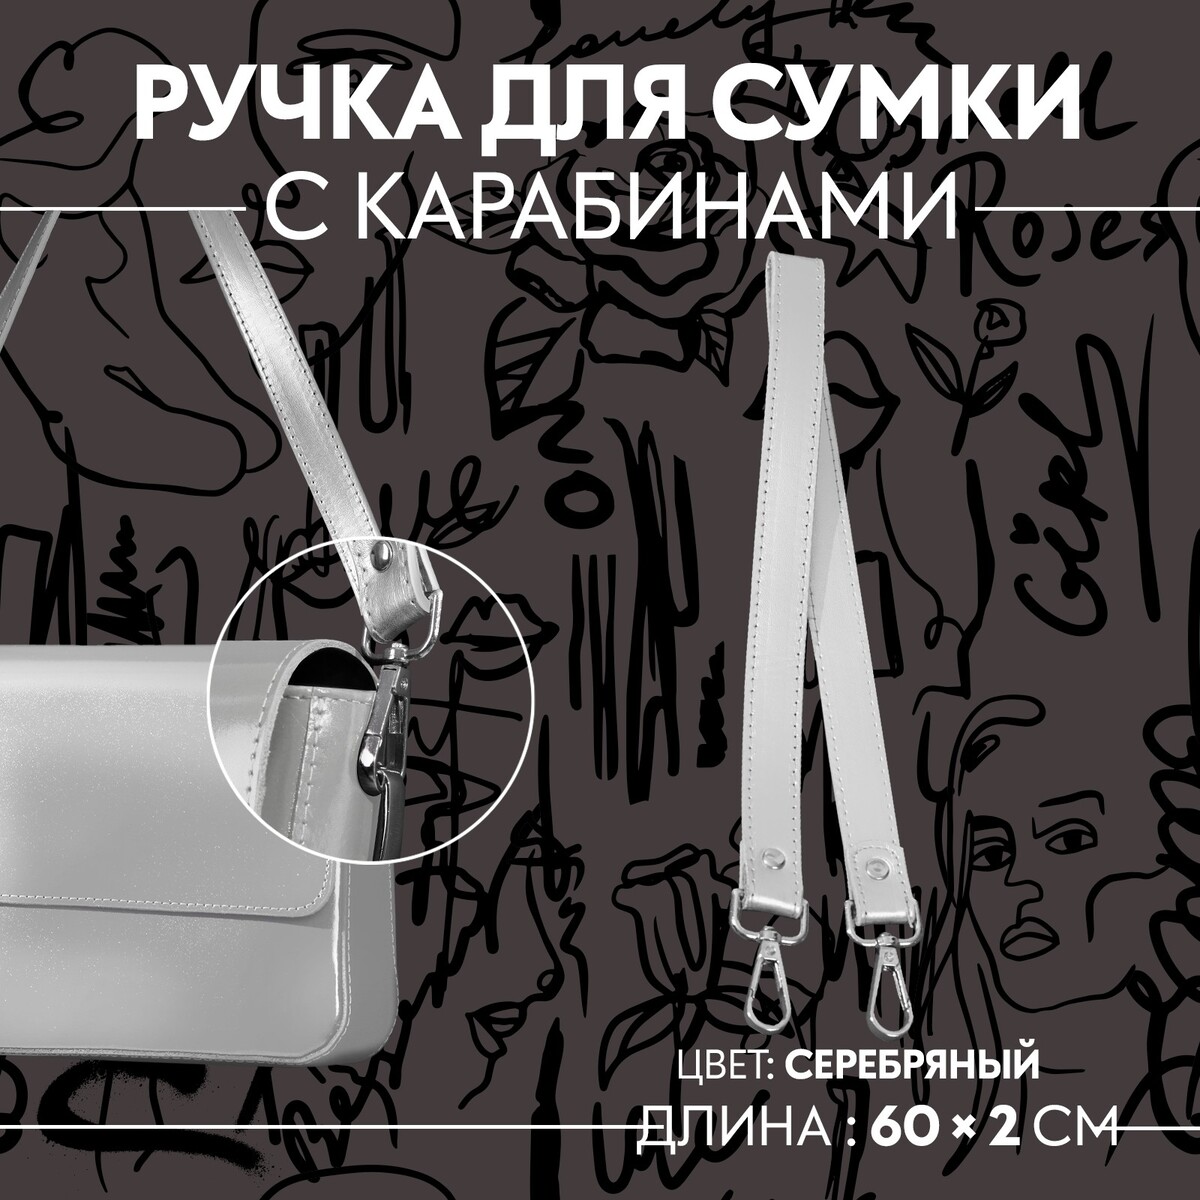 Ручка для сумки, с карабинами, 60 × 2 см, цвет серебряный ручка для сумки канат 60 × 1 5 см с карабинами кремовый серебряный